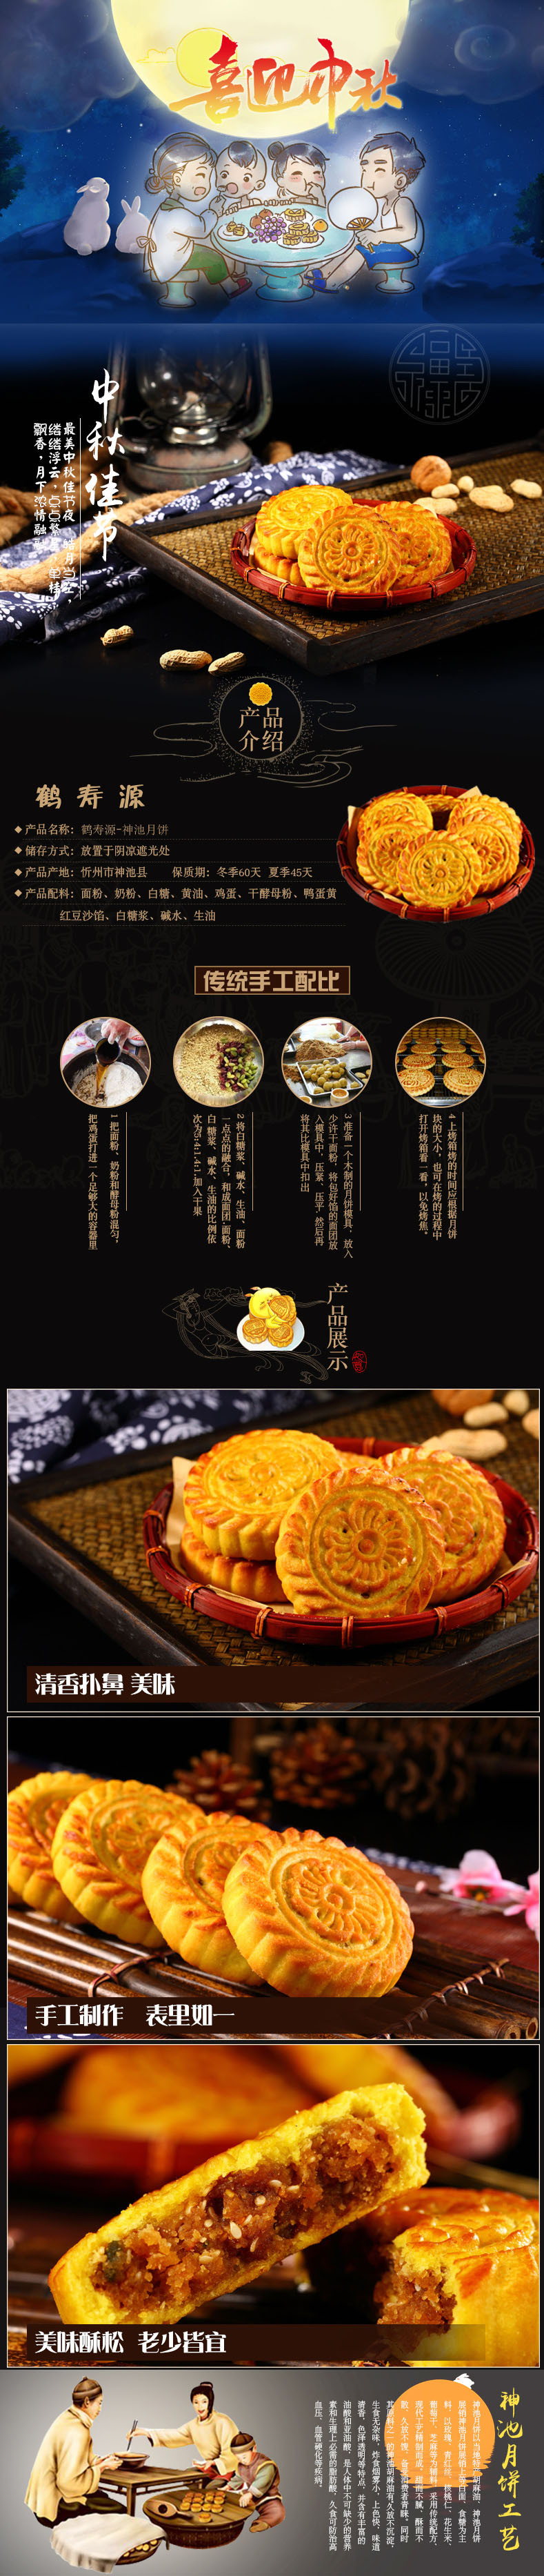 【五台山馆 · 神池】鹤寿源 传统老月饼 8个装